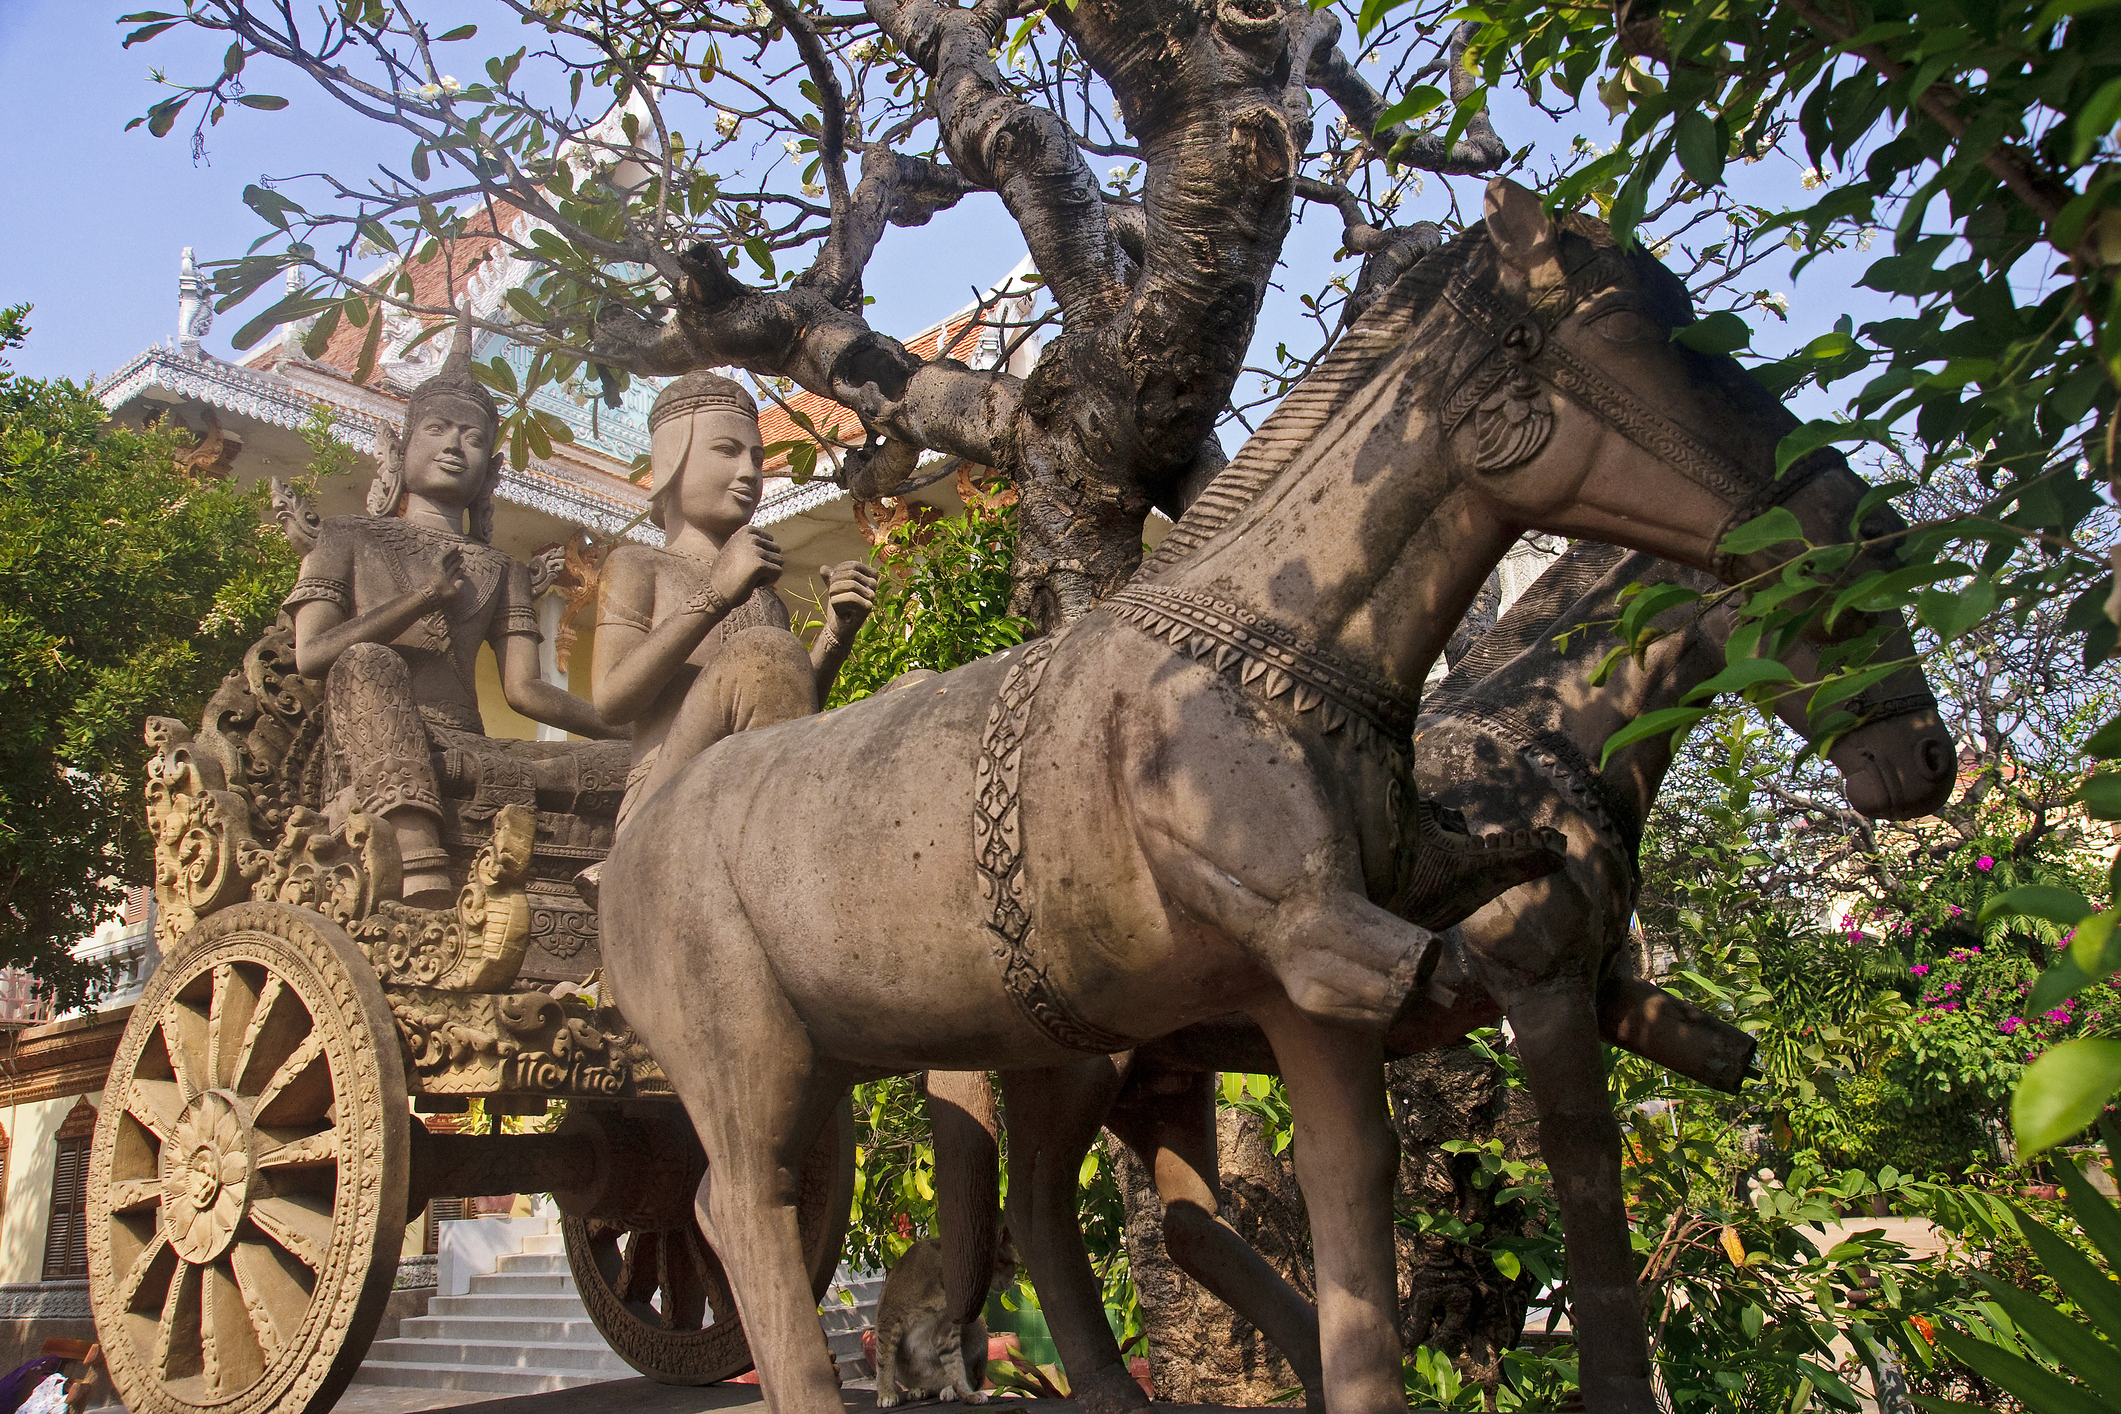 Перлата на Азия - така наричат столицата на Камбоджа Пном Пен. Градът, разположен на мястото, където се събират 3 реки: Басак, Саб и Меконг е на повече от 500 години.Ако искате да отидете там и да се потопите в тази многовековна история, култура и красива природа в съчетание с древни културни паметници, разгледайте нашата галерия